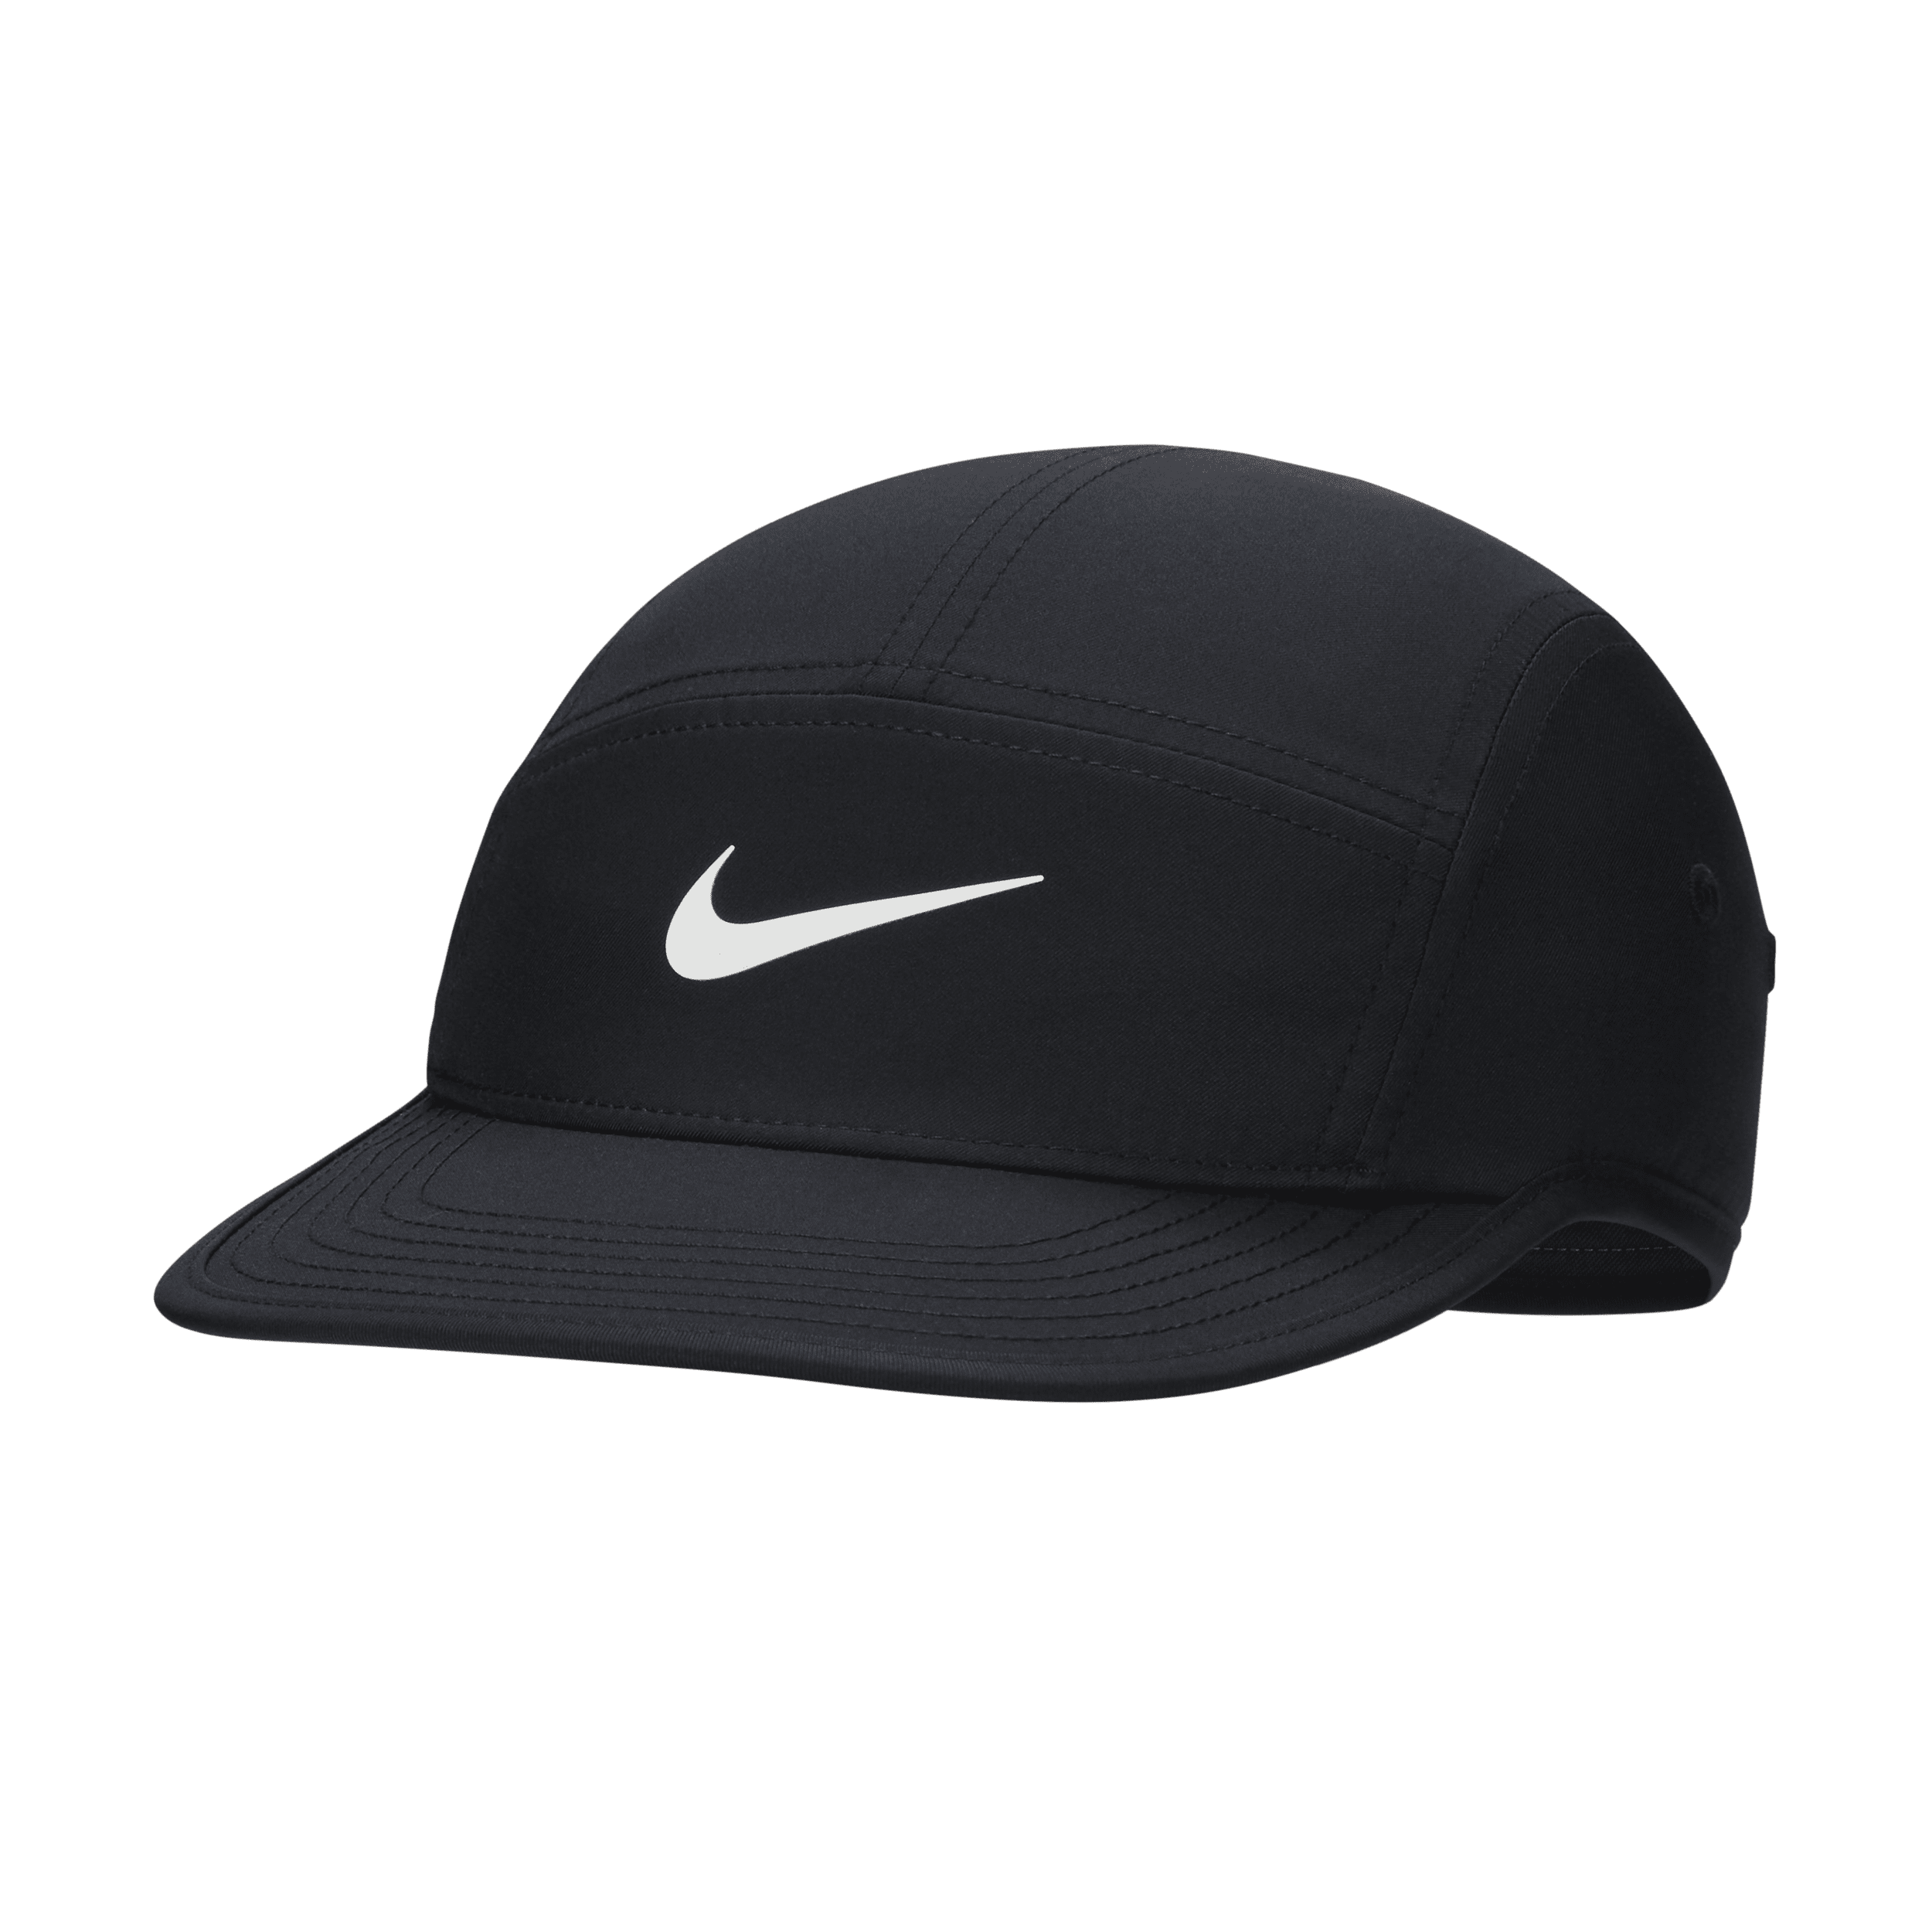 Nike Dri-FIT Fly Gorra sin estructura con logotipo Swoosh - Negro